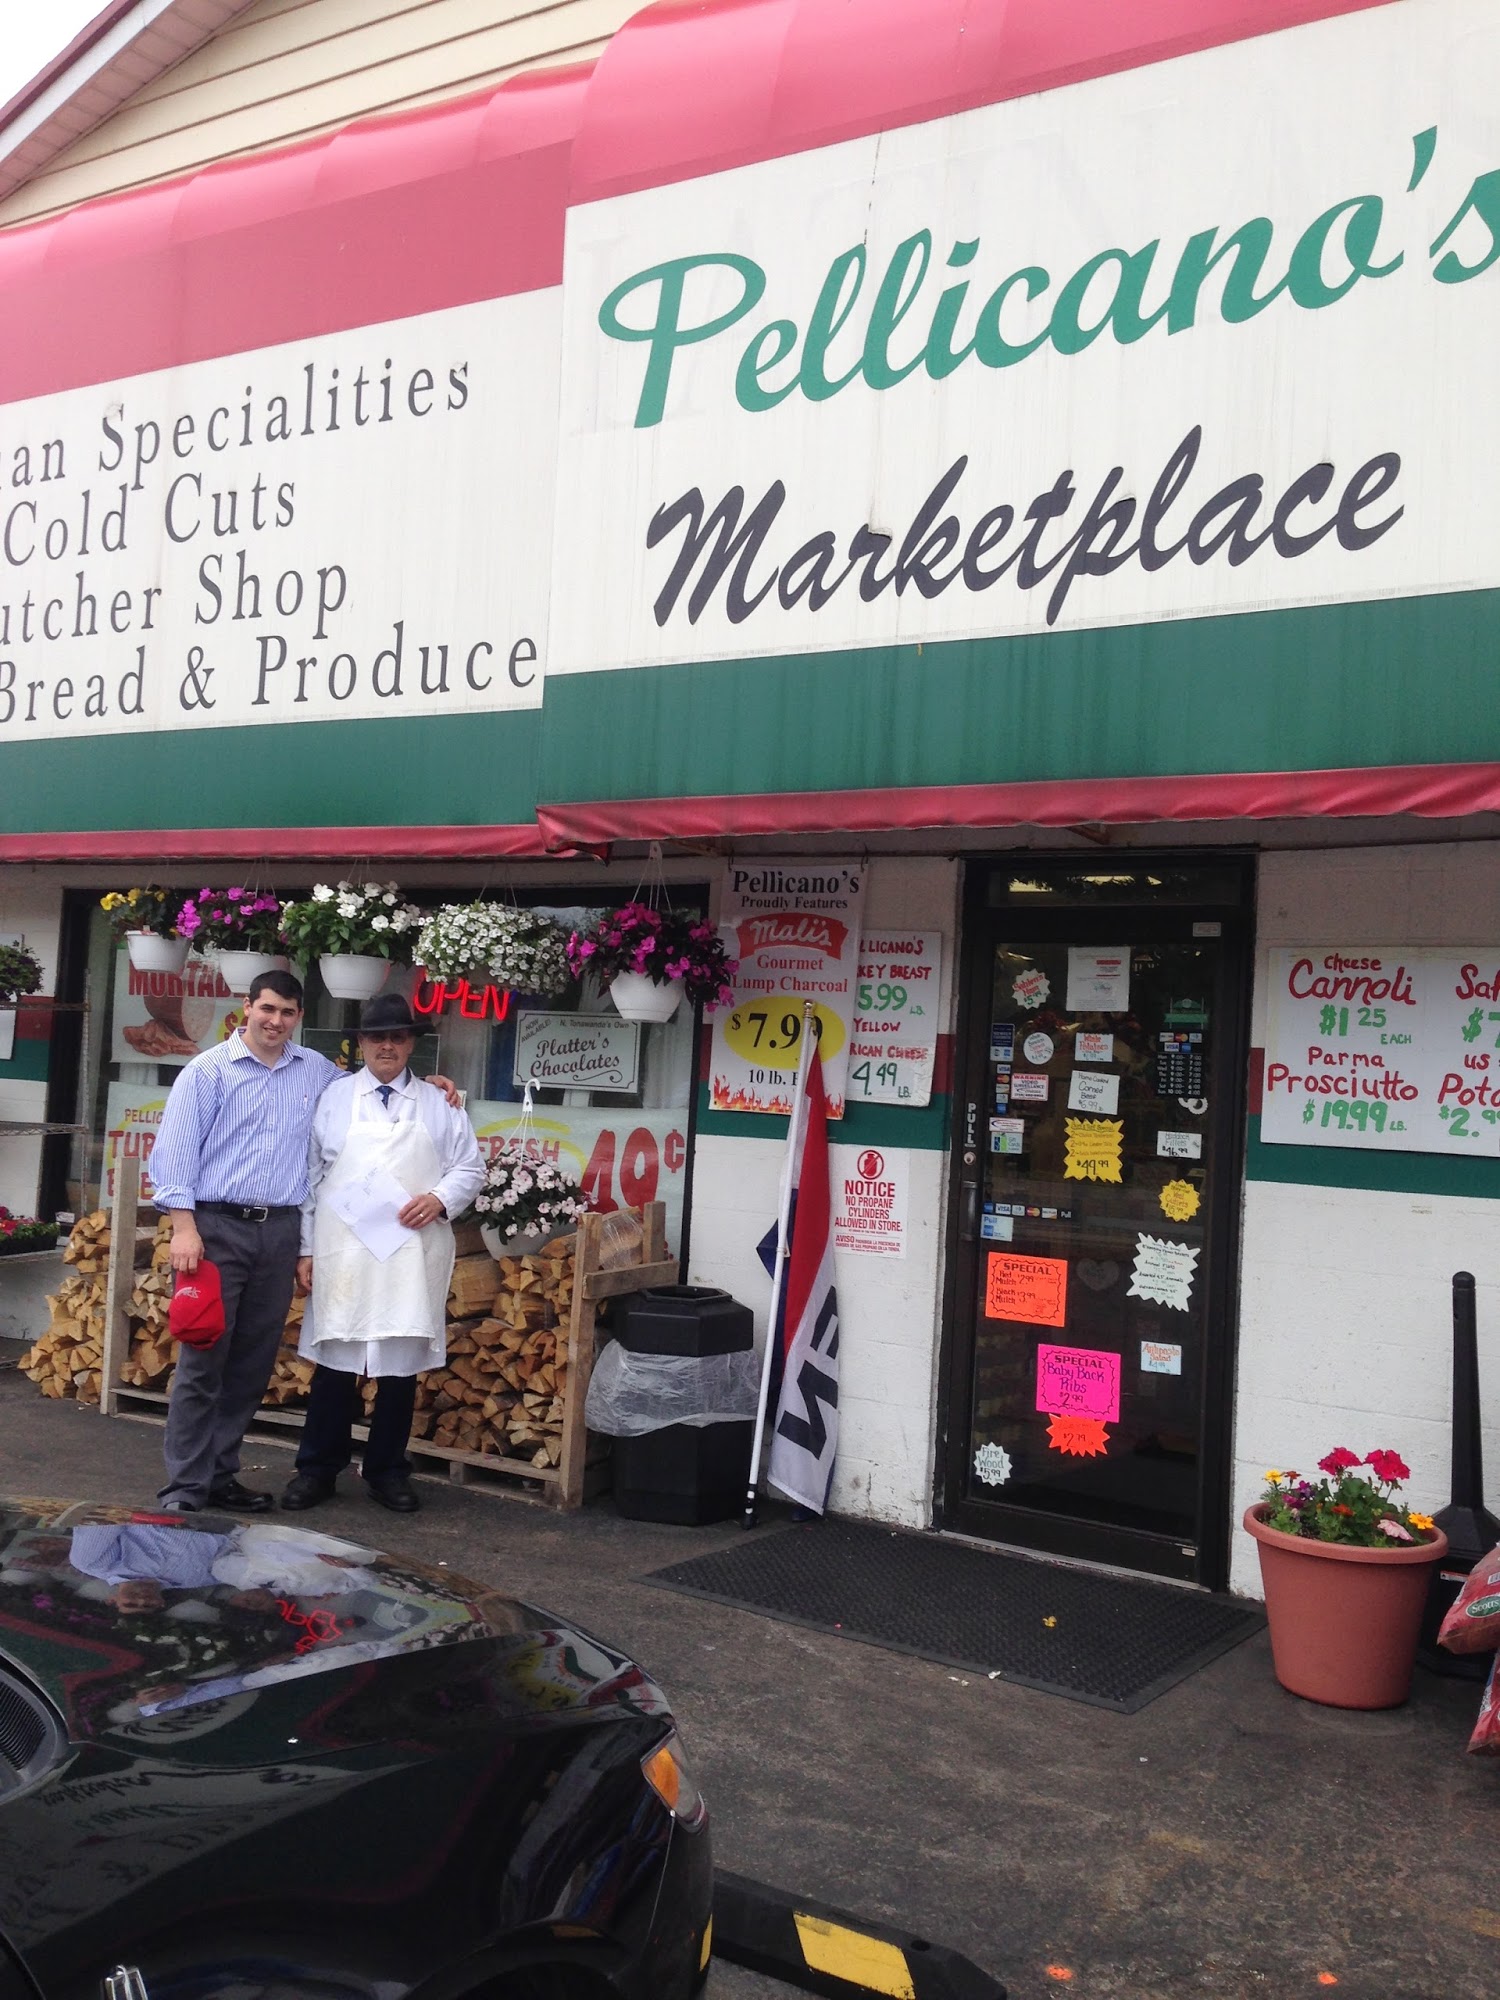 Pellicano's Marketplace